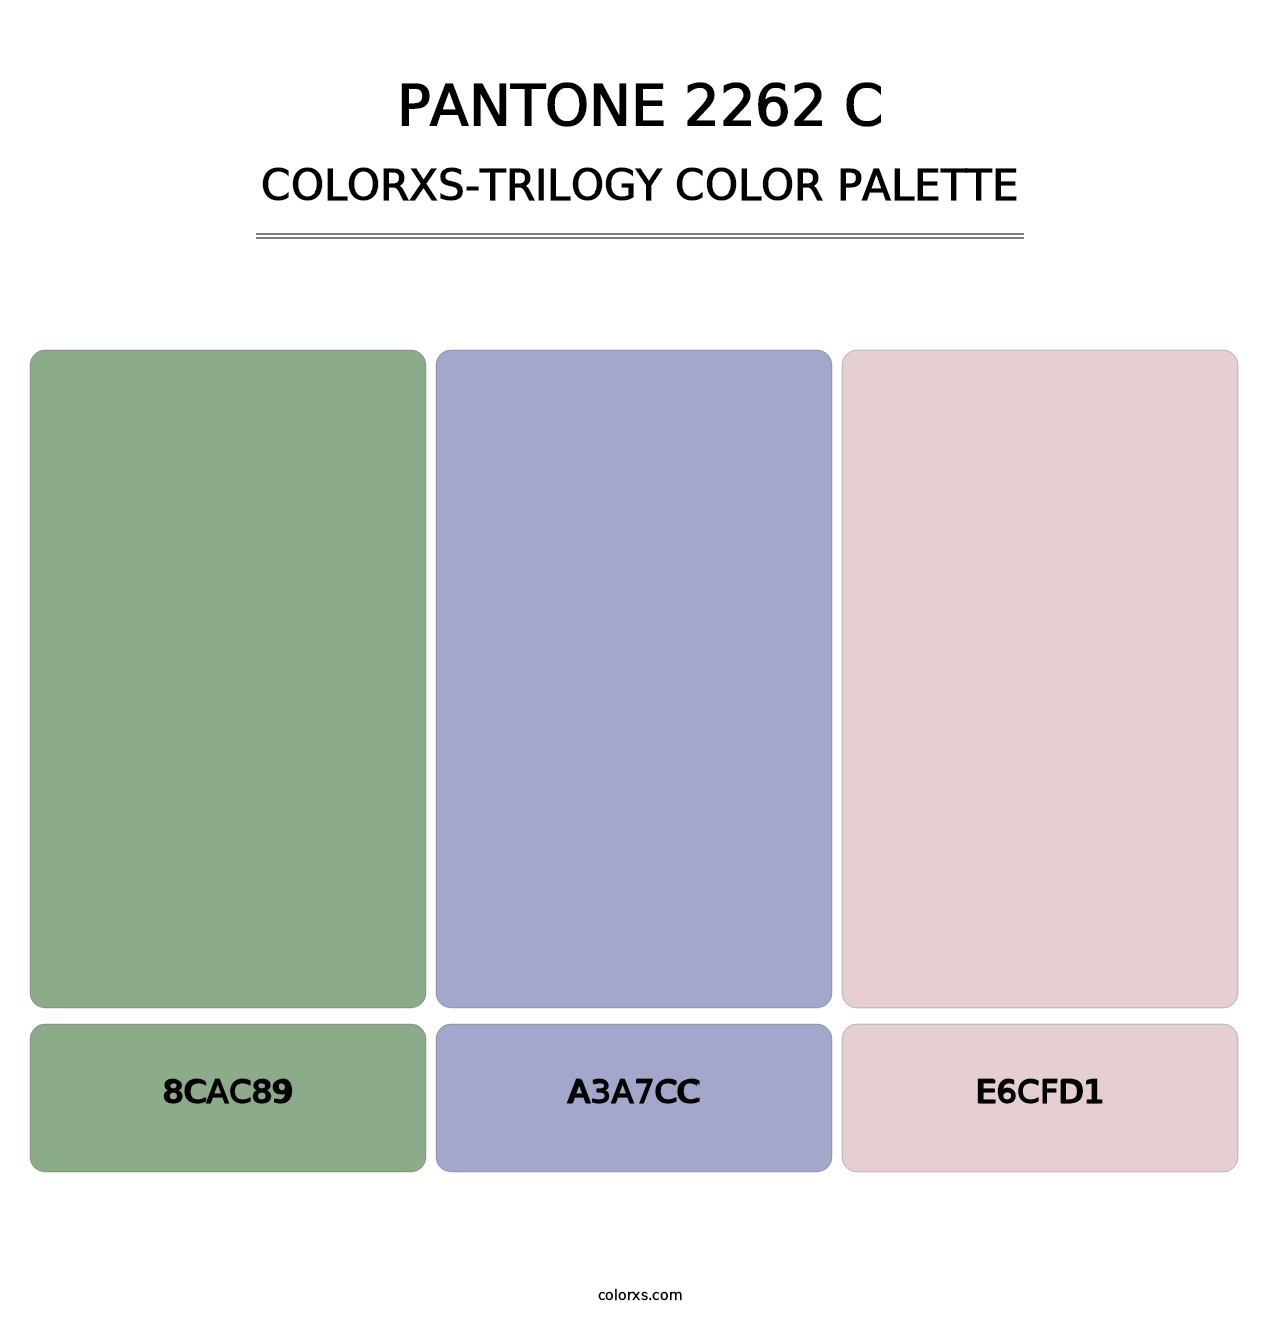 PANTONE 2262 C - Colorxs Trilogy Palette